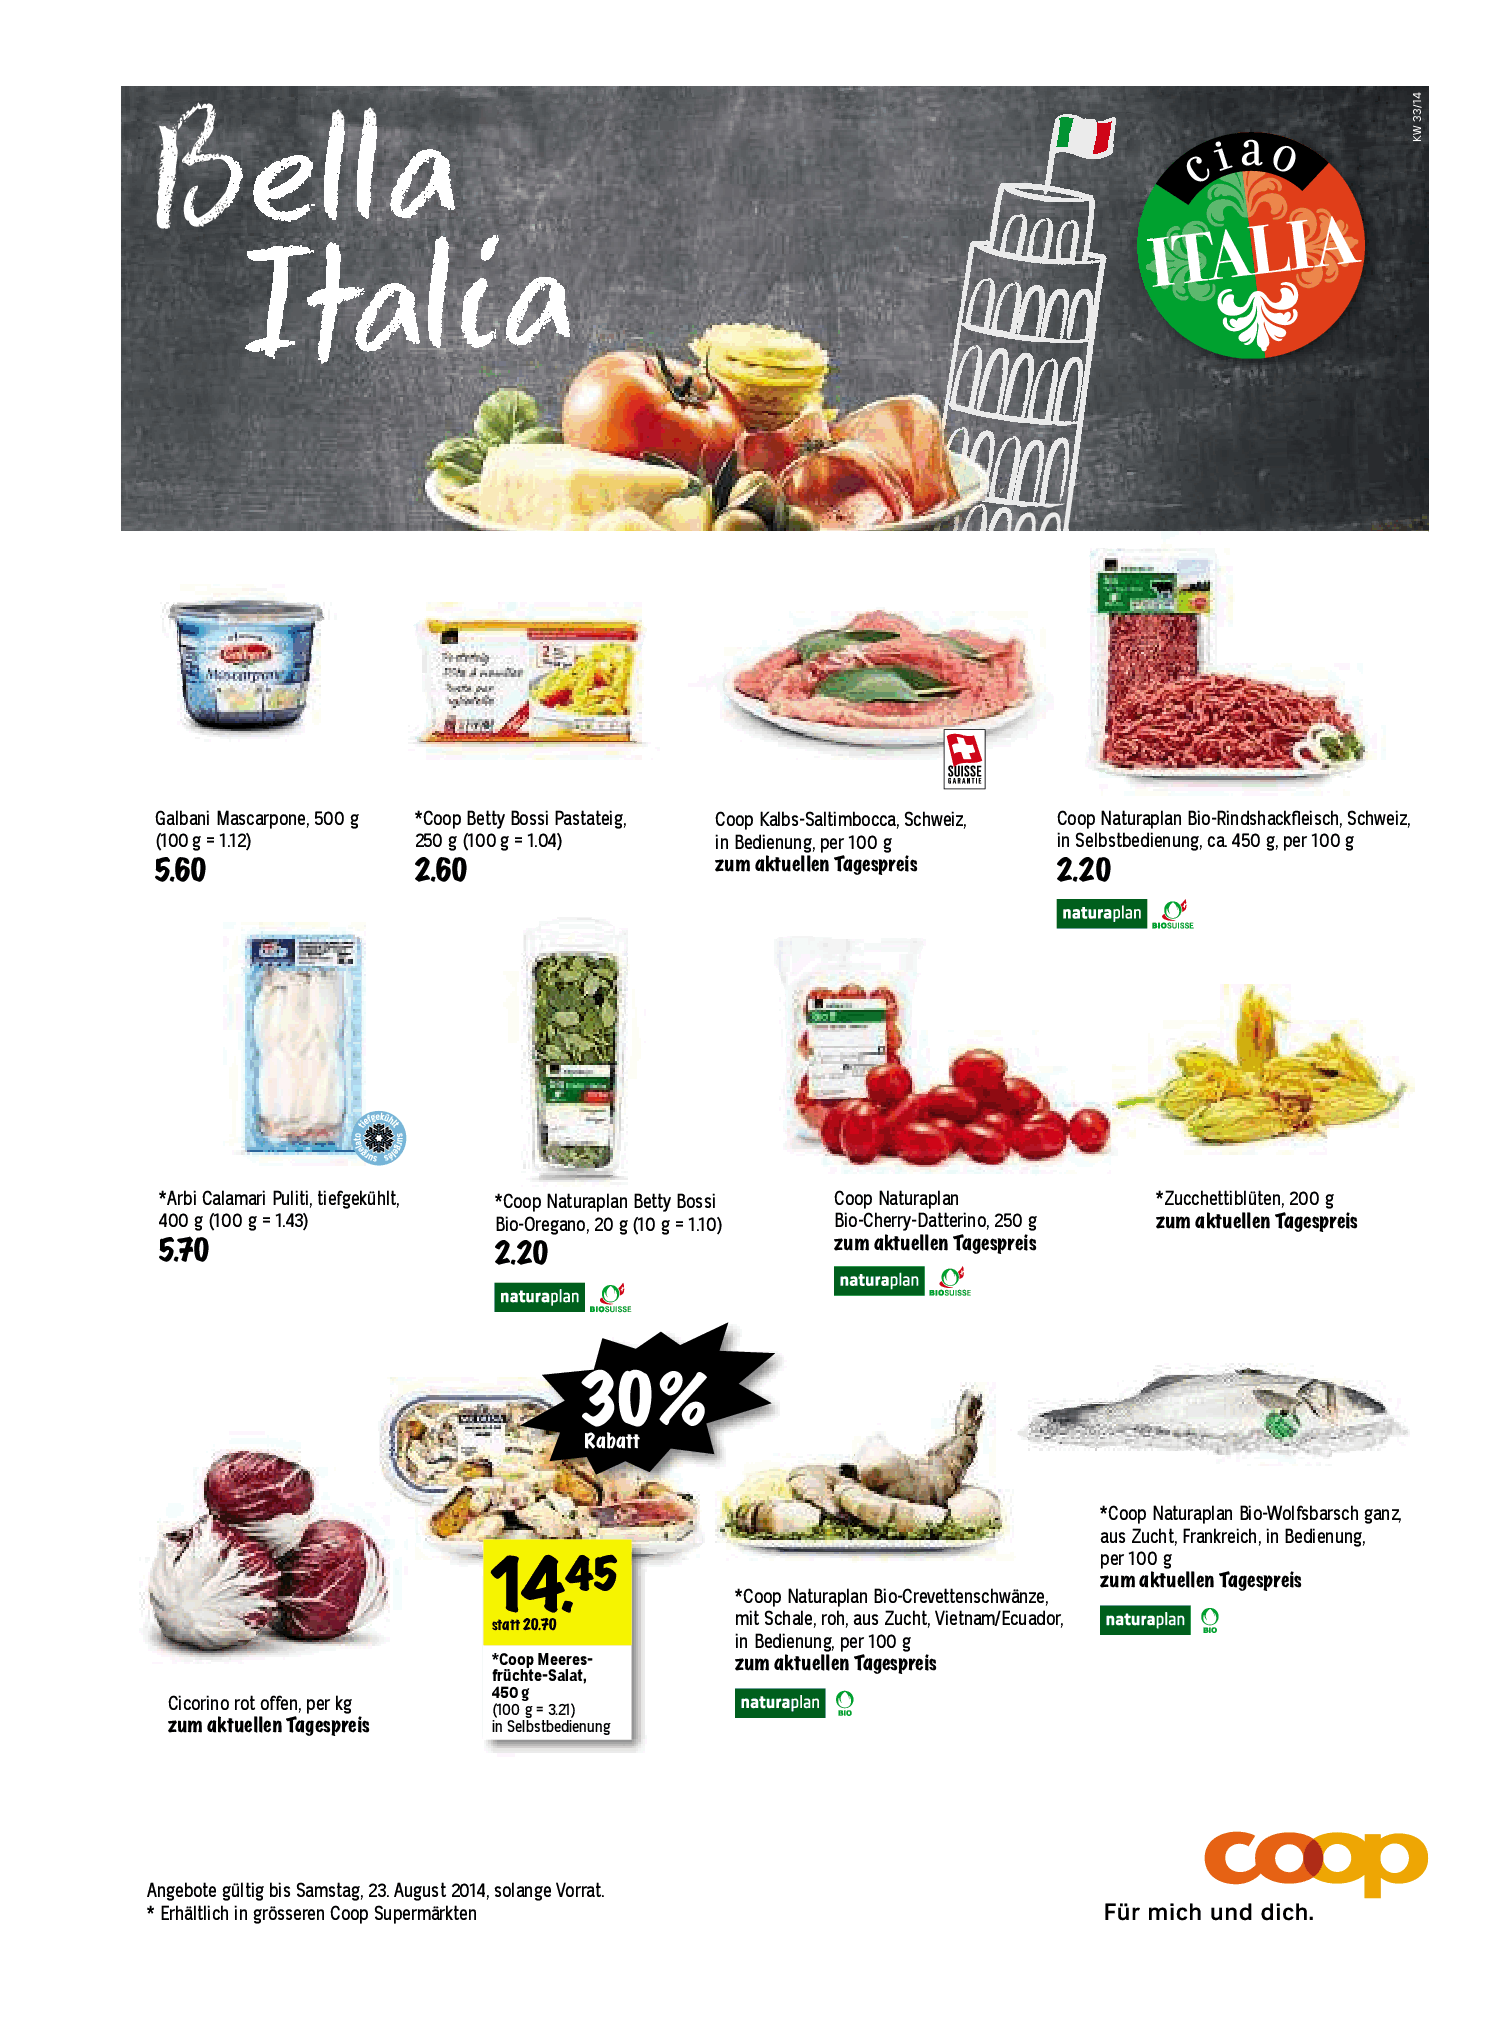 Lavazza - Crema e Gusto Dolce (250 gr) - BellaItalia Food Store